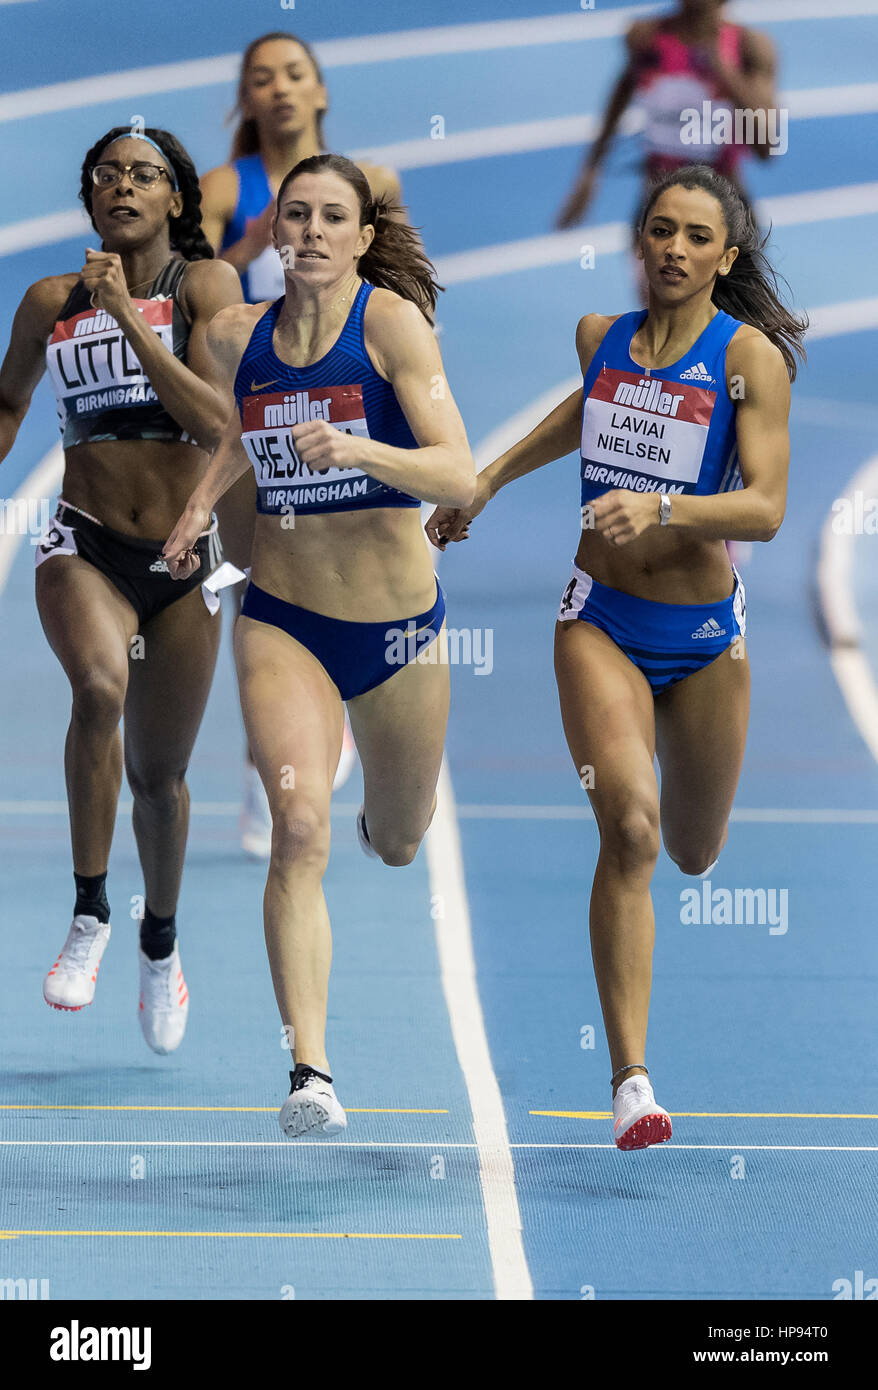 Zuzana Hejnova (CZE) gewann die Damen-400 Meter vor Laviai Nielsen (GBR) und Shamier wenig (USA) bei der Barclaycard Arena, Birmingham, Englan Stockfoto